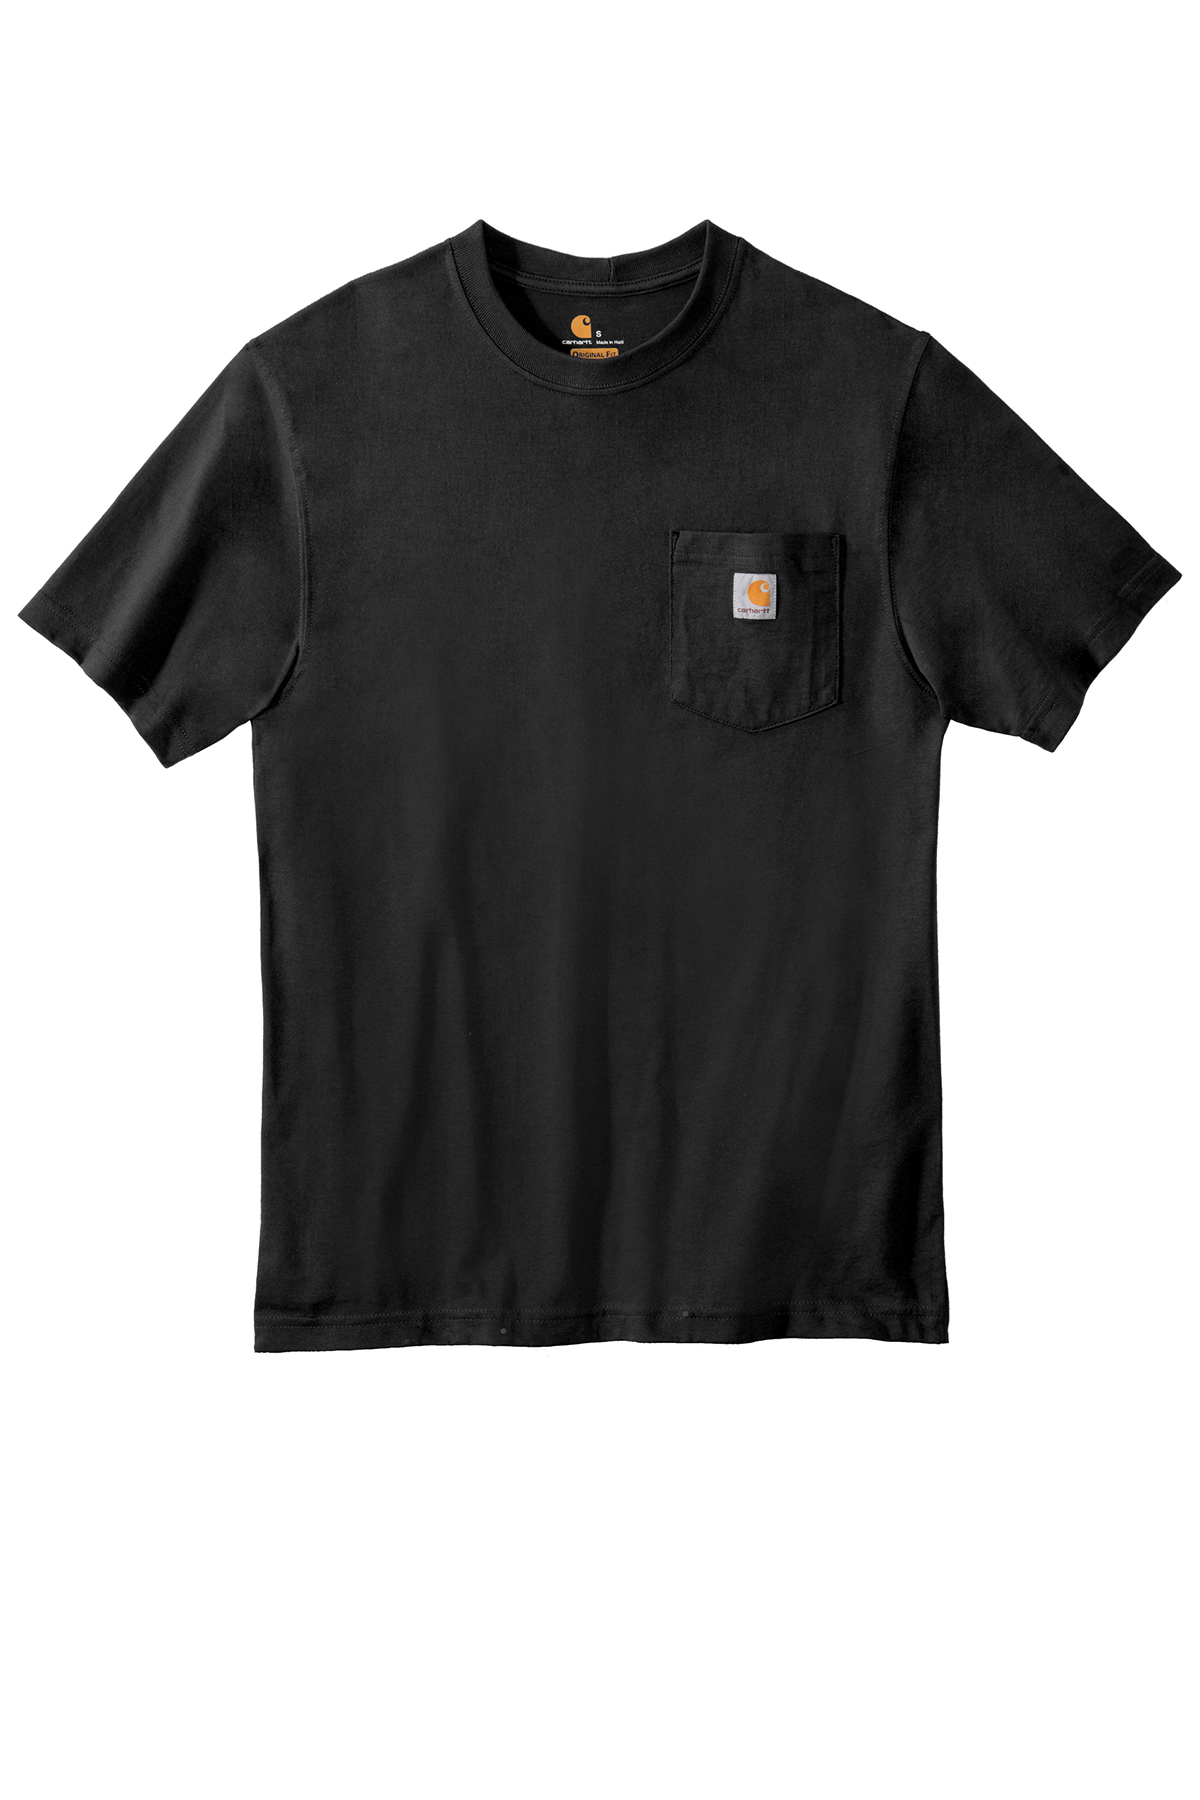 Carhartt WIP x Mastermind L/S Pocket Loose T-Shirt Black